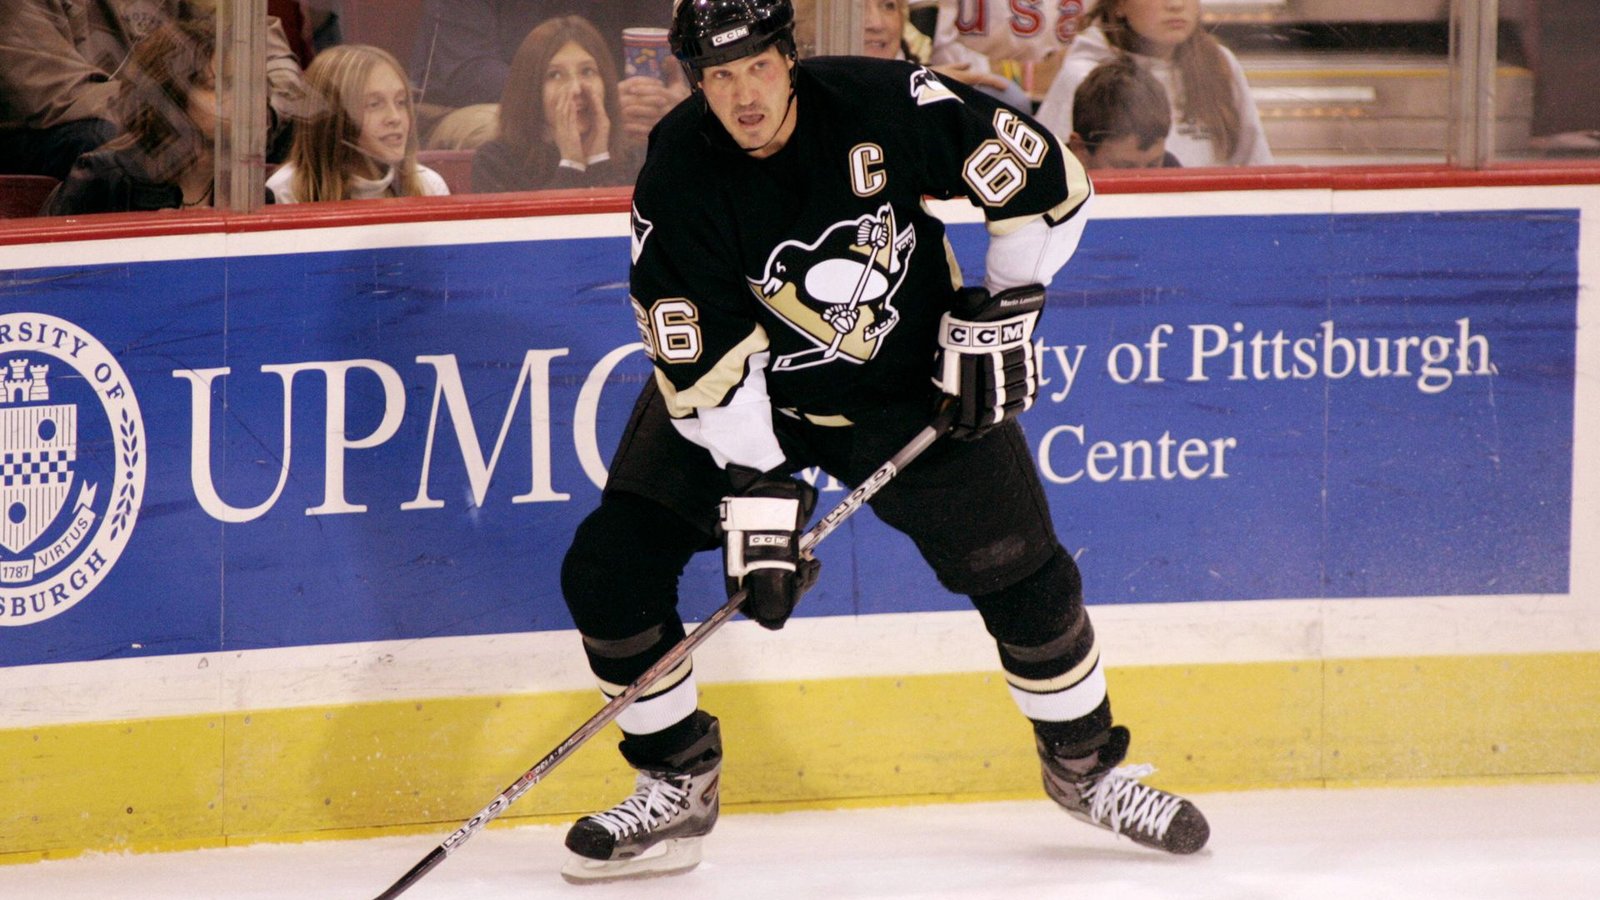 Mario Lemieux Der Stürmer hielt in 1022 Partien zwischen 1984 und 2006 in der NHL für die Pittsburgh Penguins seine Knochen hin – sein Punkteschnitt von 2,01 pro Spiel sowie seine Torstatistik von 0,82 pro Partie waren NHL-Rekorde. Im Frühjahr 1997 beendete der Kanadier wegen eines  Krebsleidens und Rückenschmerzen seine Karriere, er wurde Teilhaber des Clubs – und stand 2000 wieder auf dem Eis. 2006 stellte der heute 56-Jährige den Schläger endgültig weg.Foto: Imagi/Icon